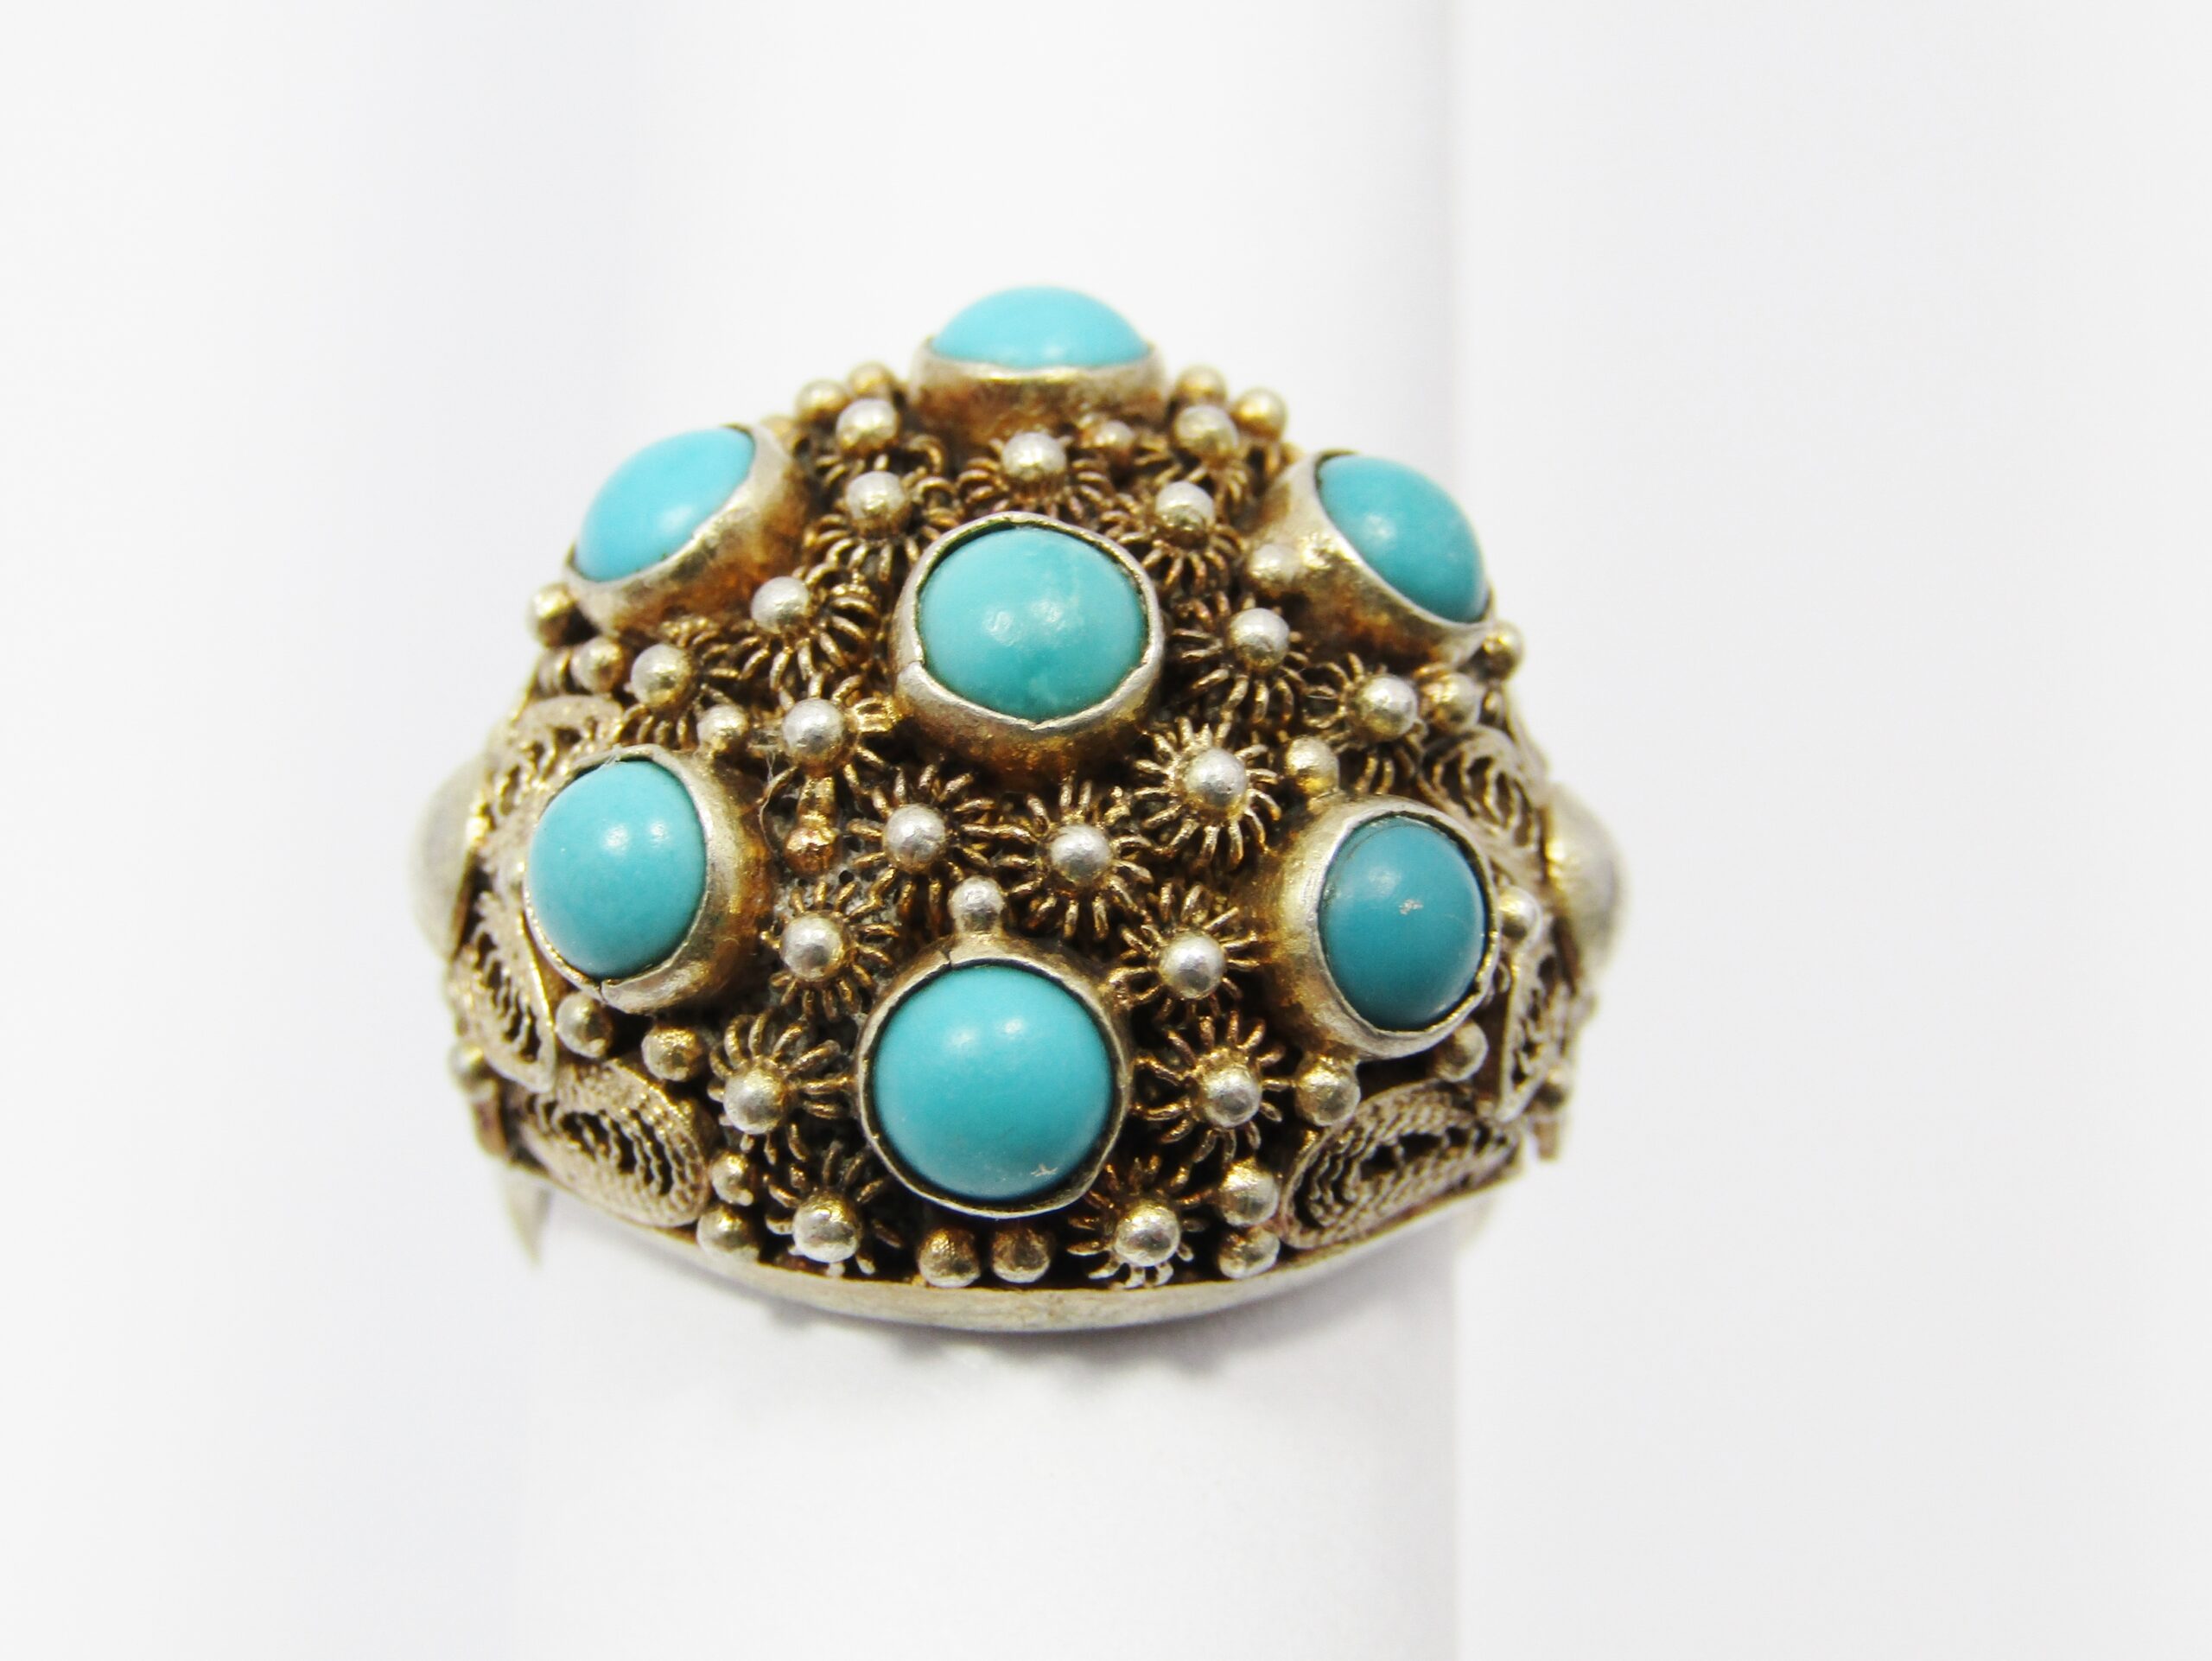 A Stunning Gold Gilt over Sterling Silver Vintage Design Ring